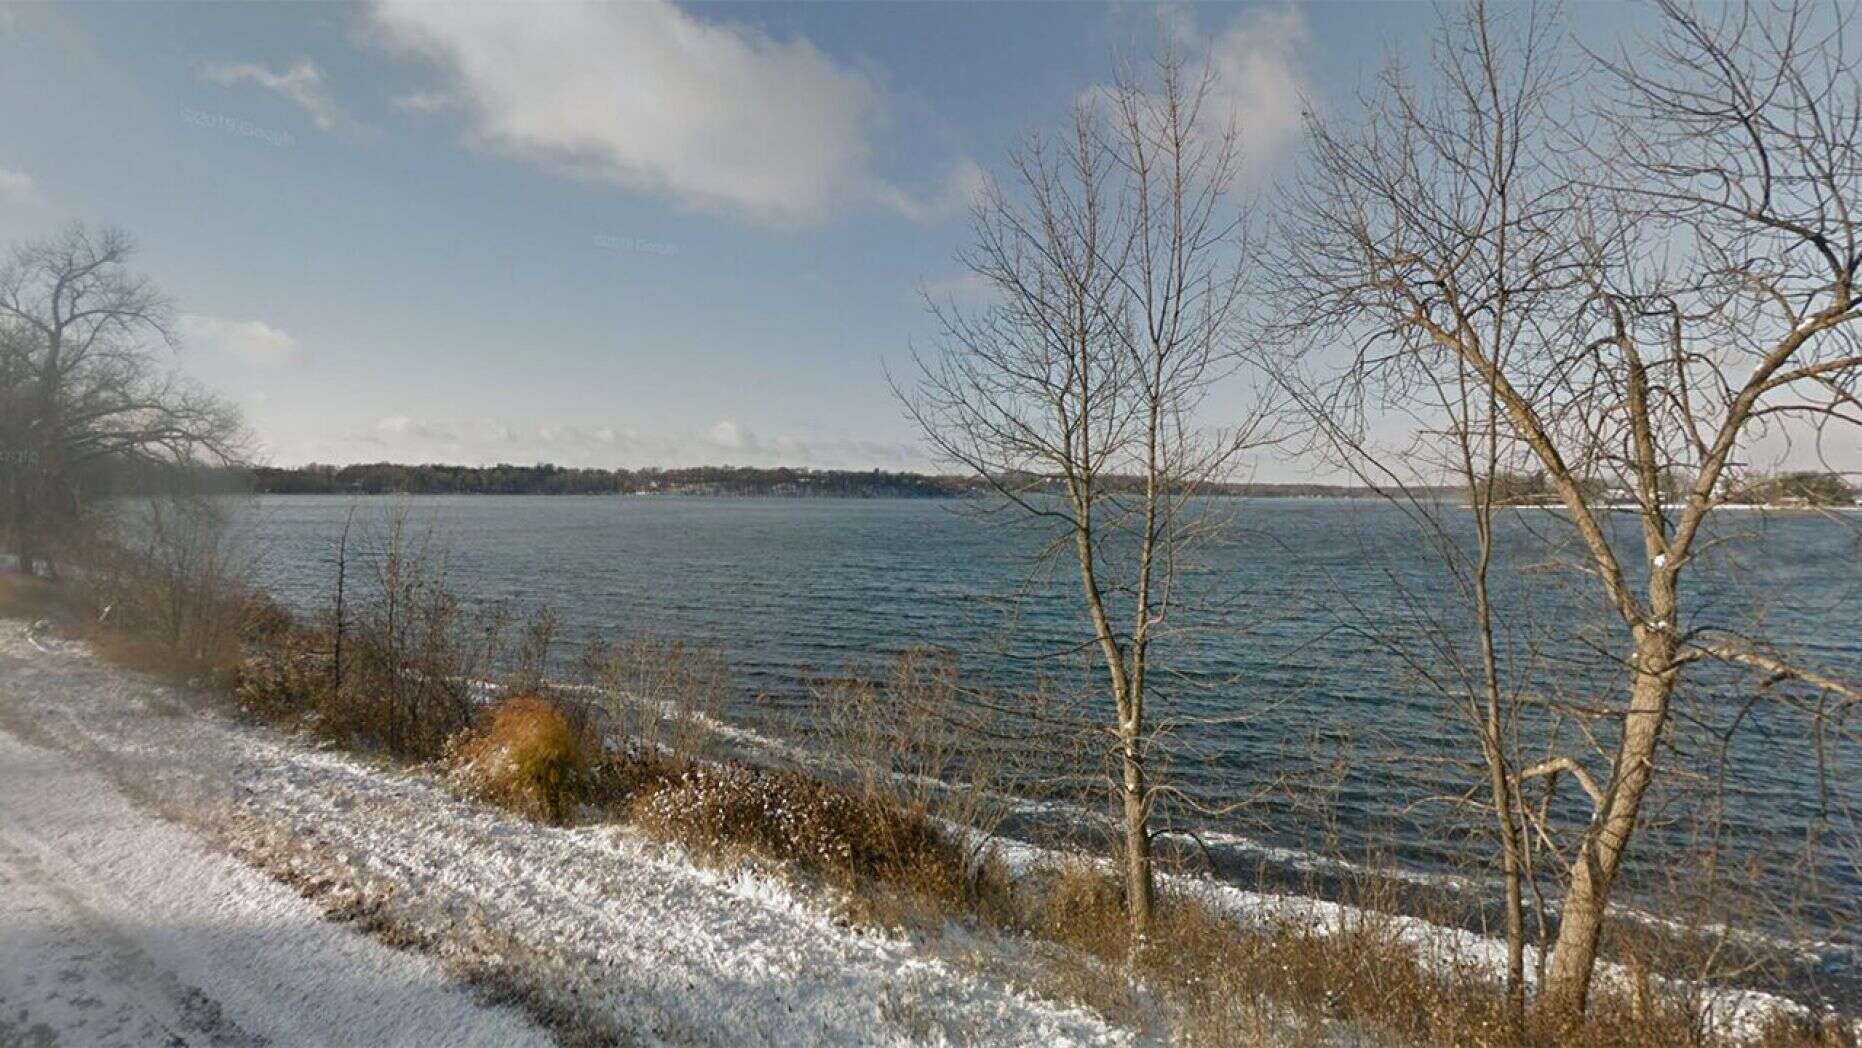 Acto heroico: Se ahogó tras rescatar a varios niños en un lago de Minnesota